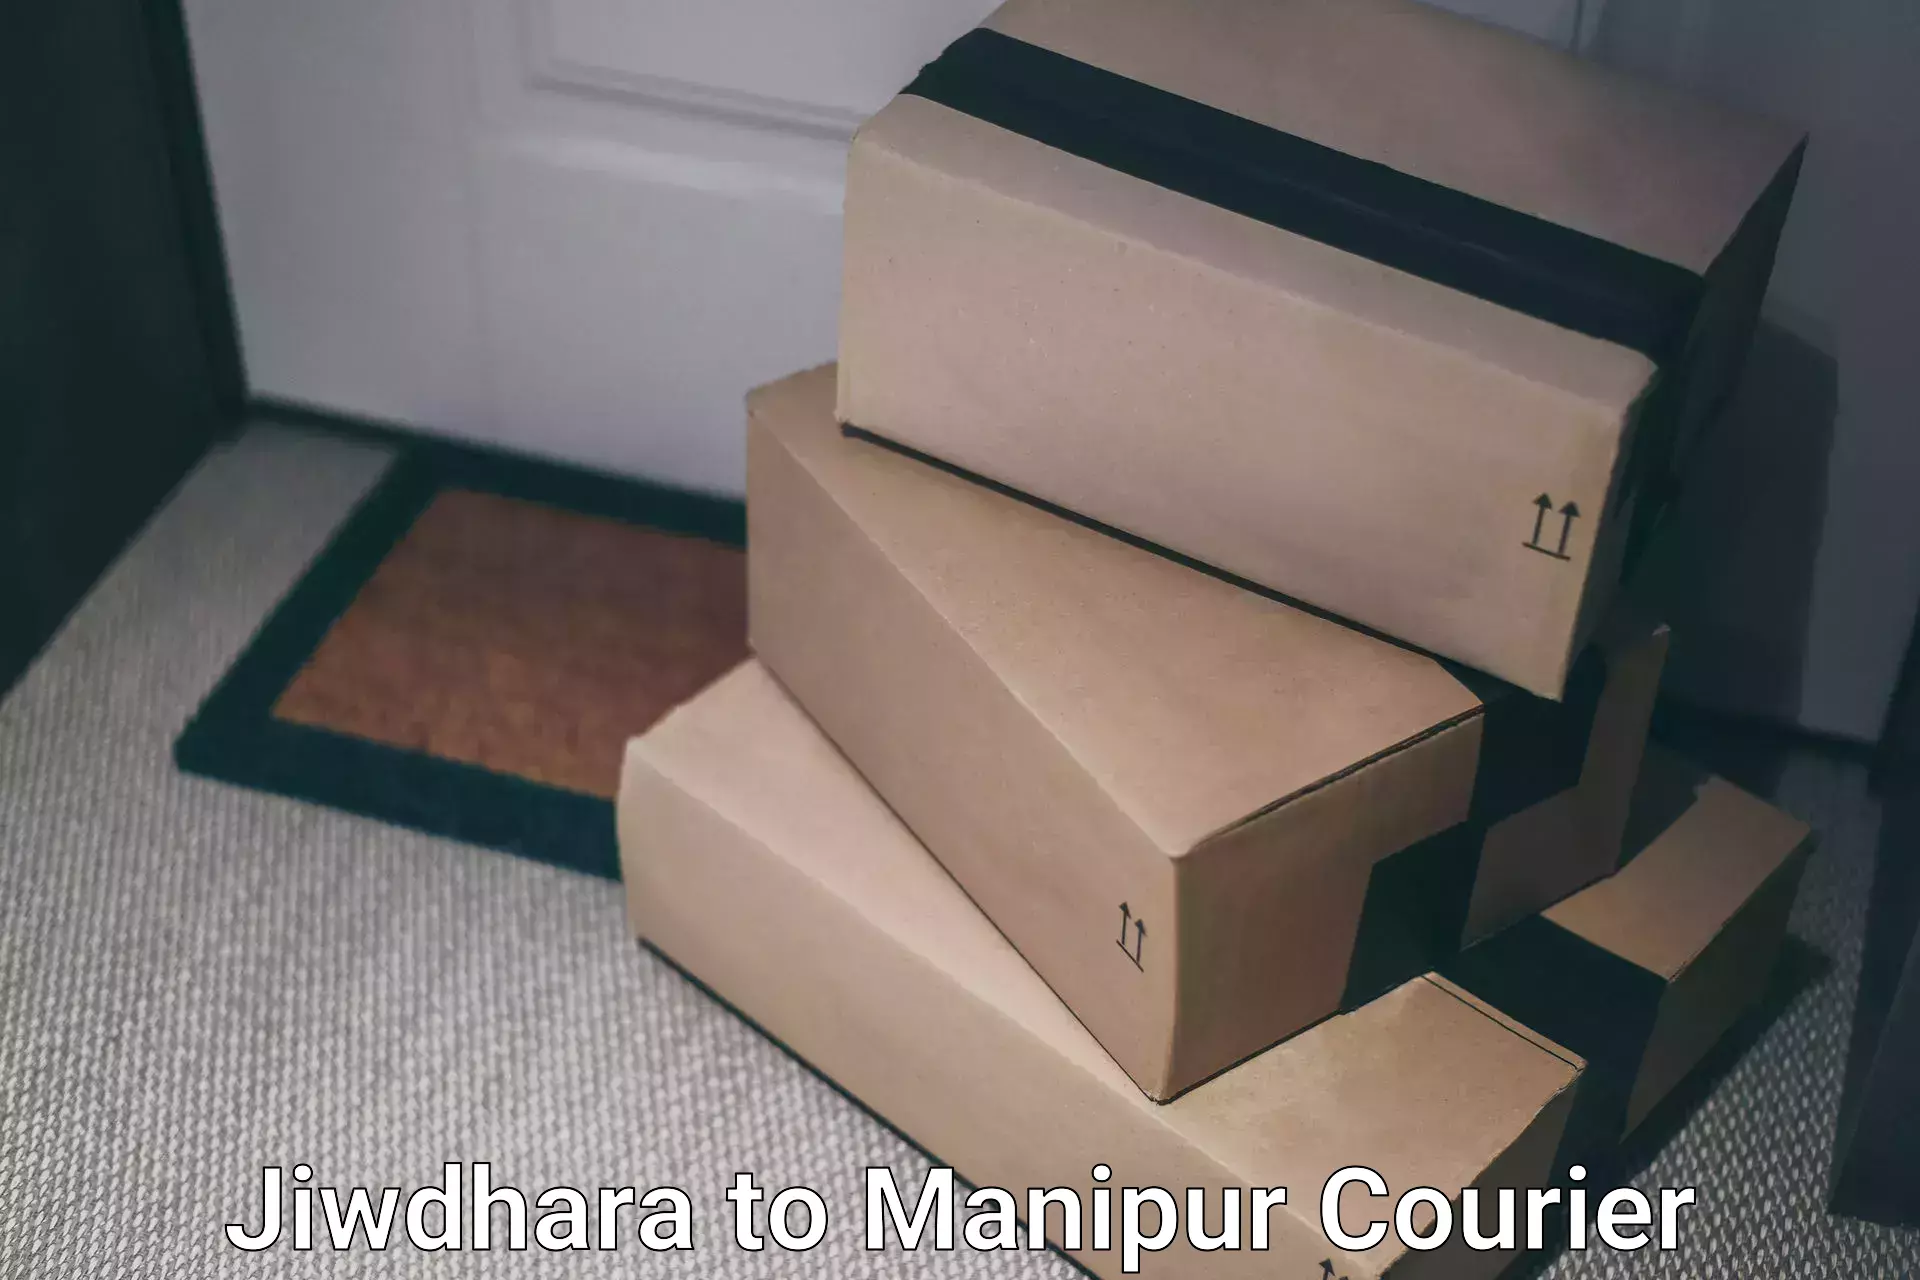 Courier service efficiency Jiwdhara to Tadubi